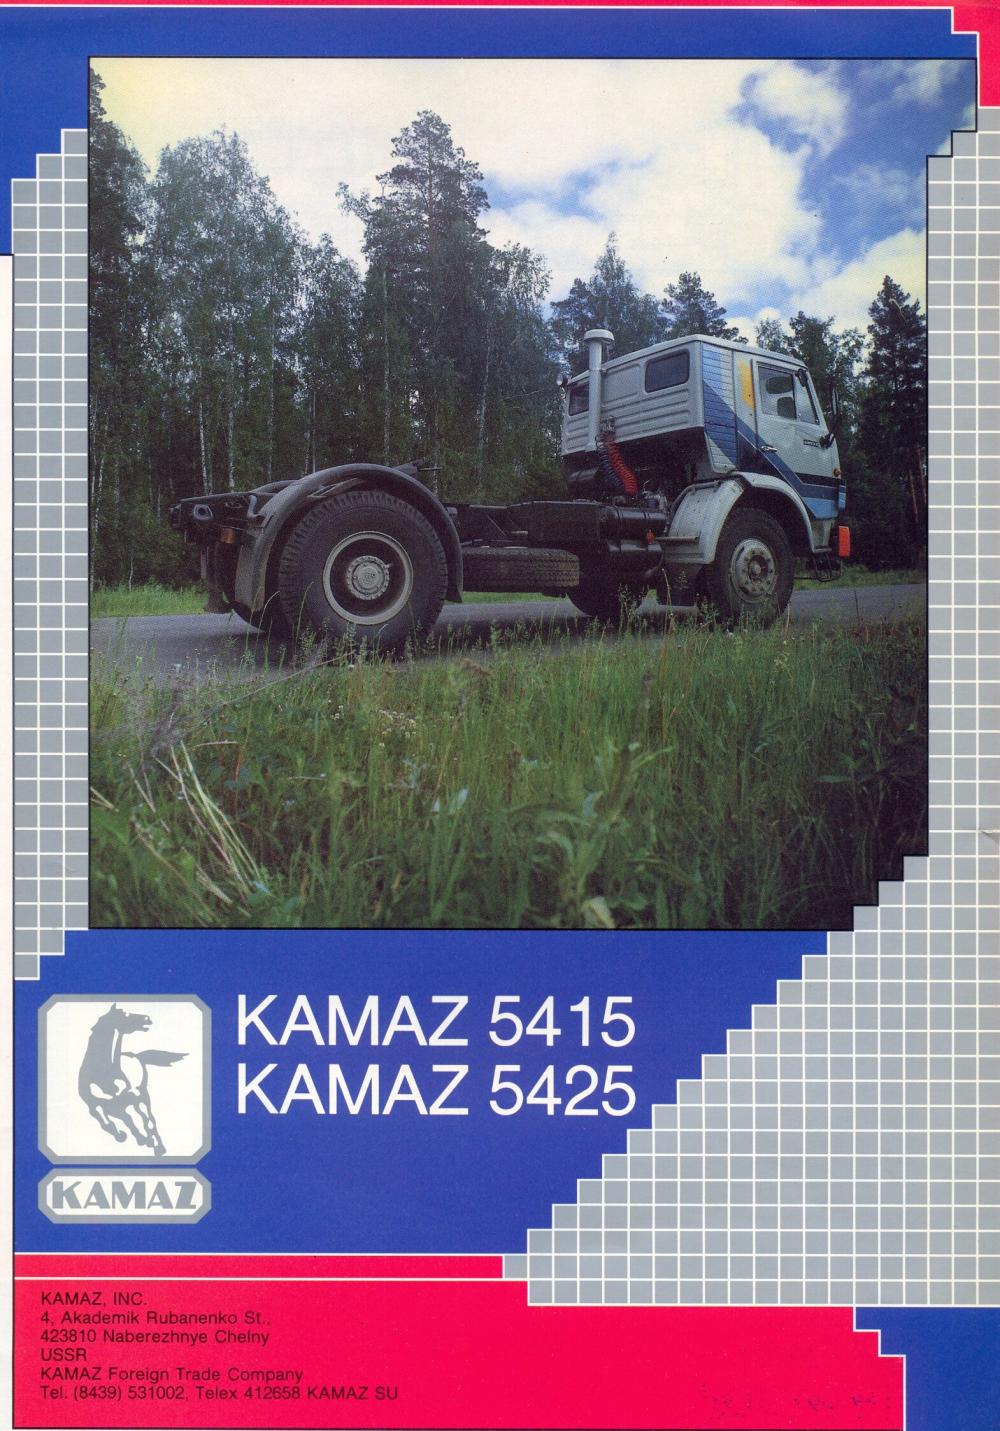 КамАЗ-54255 — фото, характеристики, история концепта